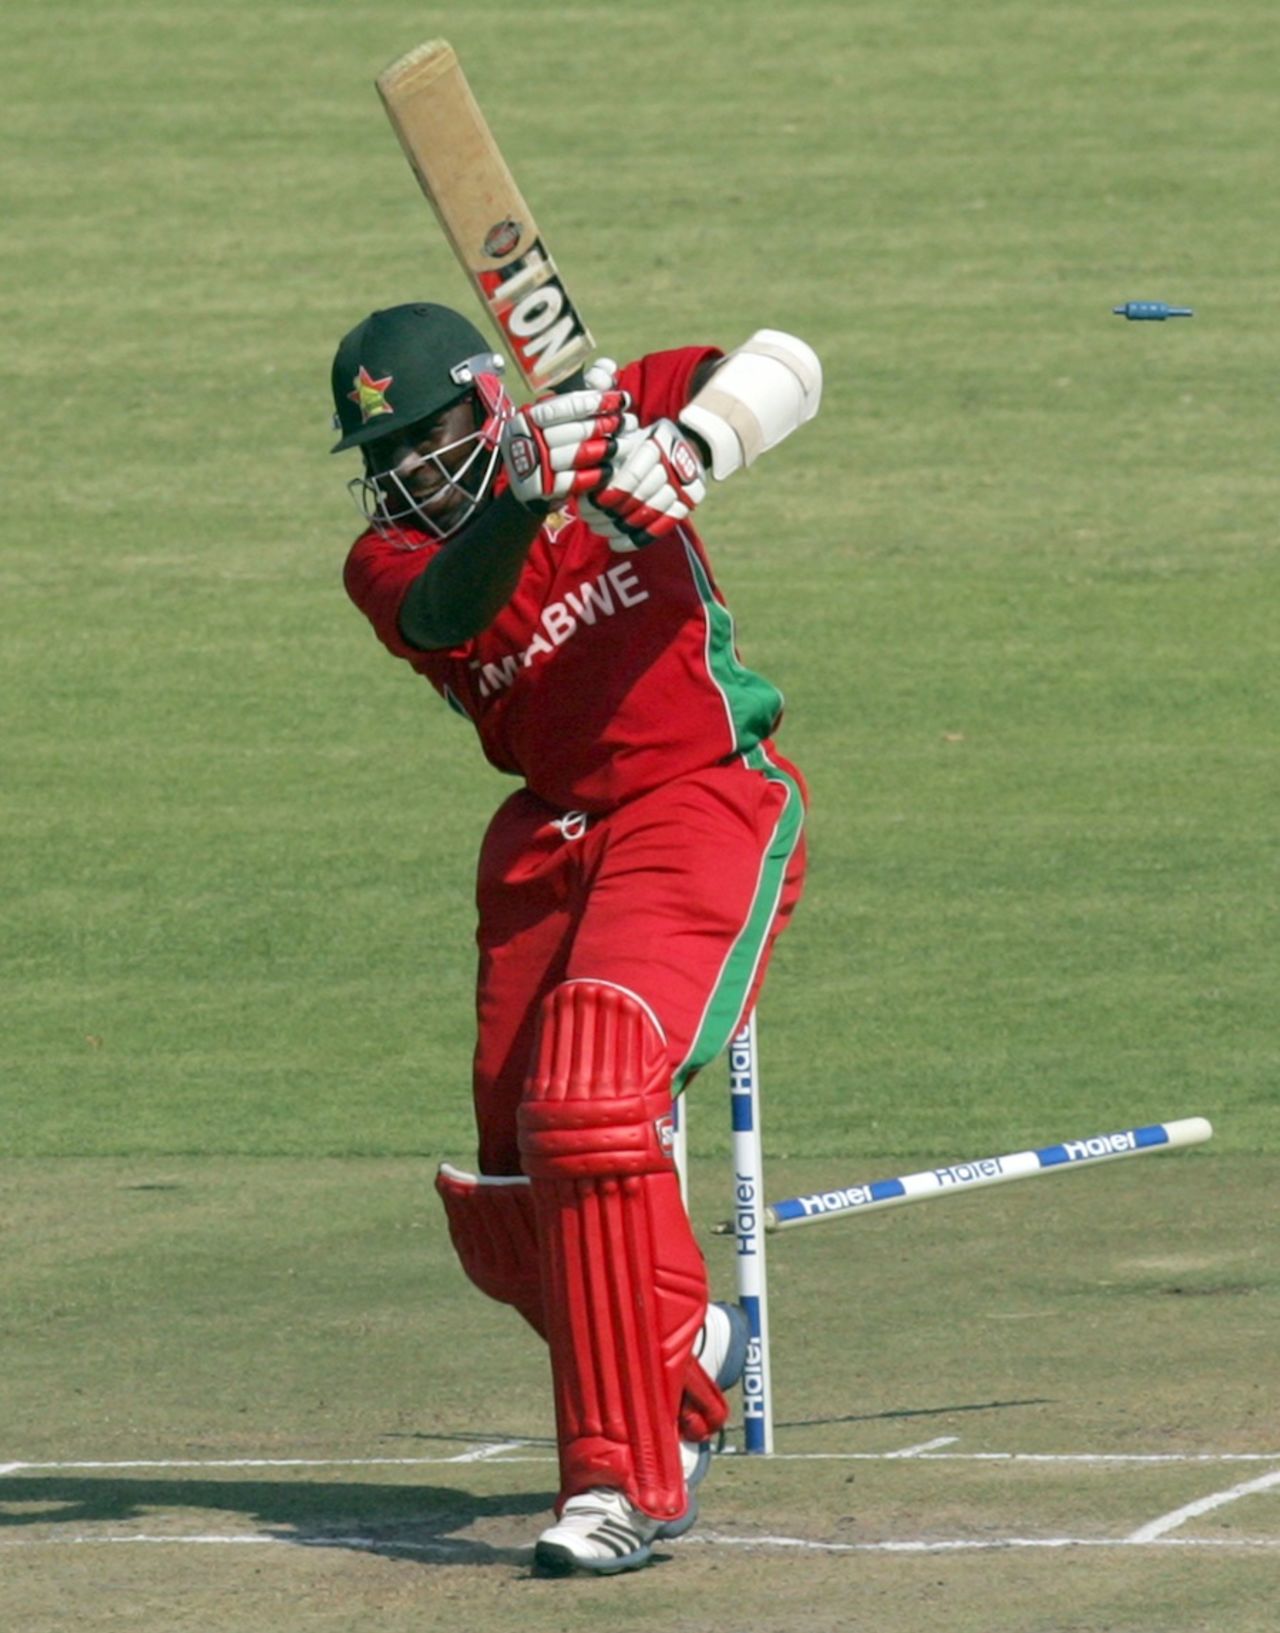 Hamilton Masakadza was bowled by Junaid Khan, Zimbabwe v Pakistan, 2nd ODI, Harare, August 29, 2013